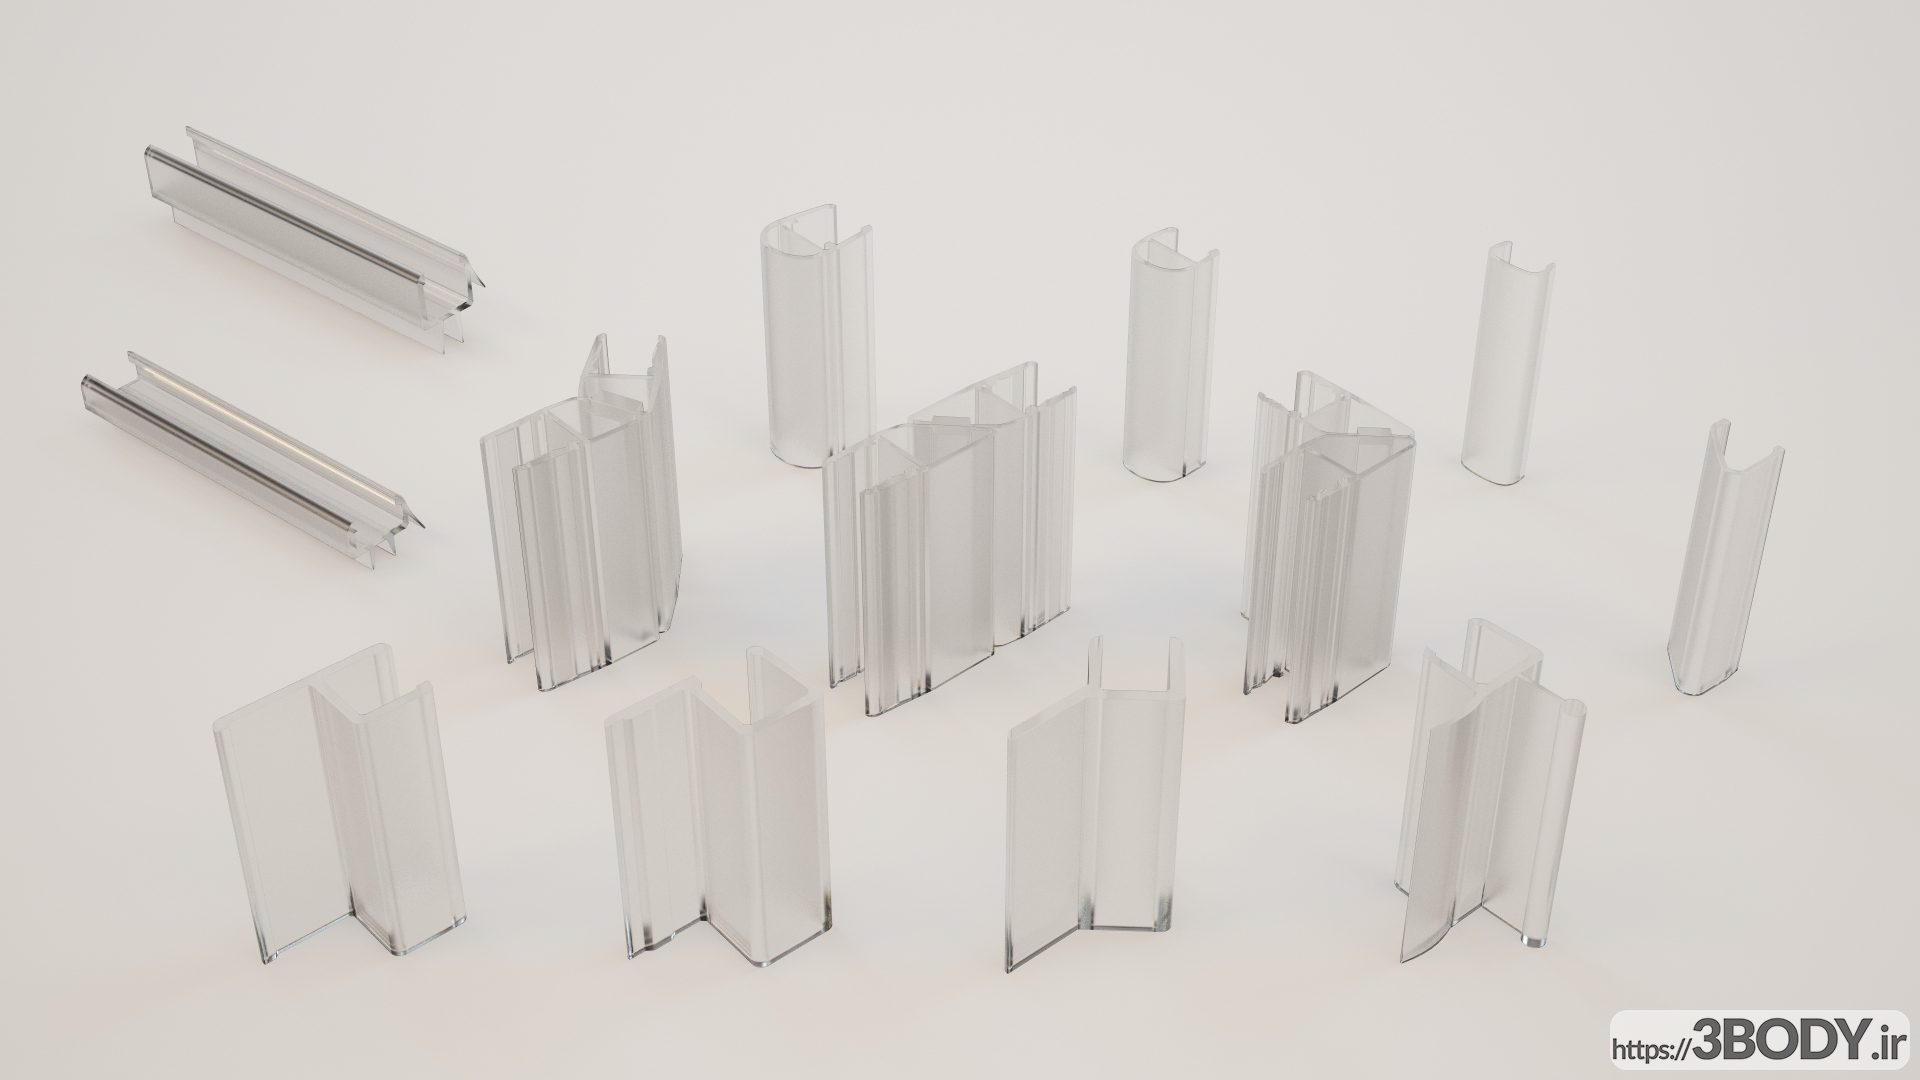 مدل سه بعدی لوازم جانبی برای کابین دوش شیشه ای عکس 11